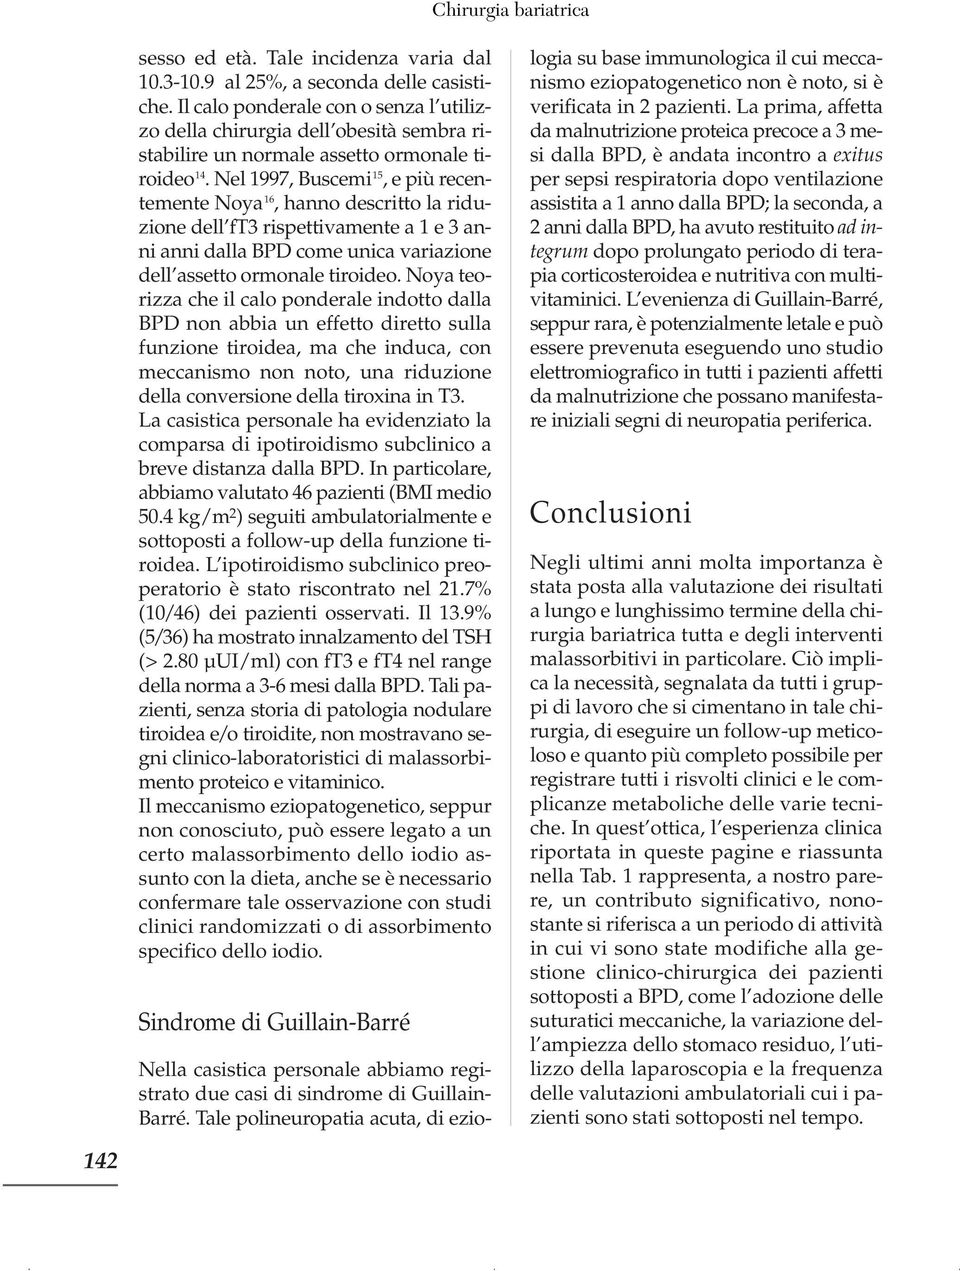 Nel 1997, Buscemi 15, e più recentemente Noya 16, hanno descritto la riduzione dell ft3 rispettivamente a 1 e 3 anni anni dalla BPD come unica variazione dell assetto ormonale tiroideo.